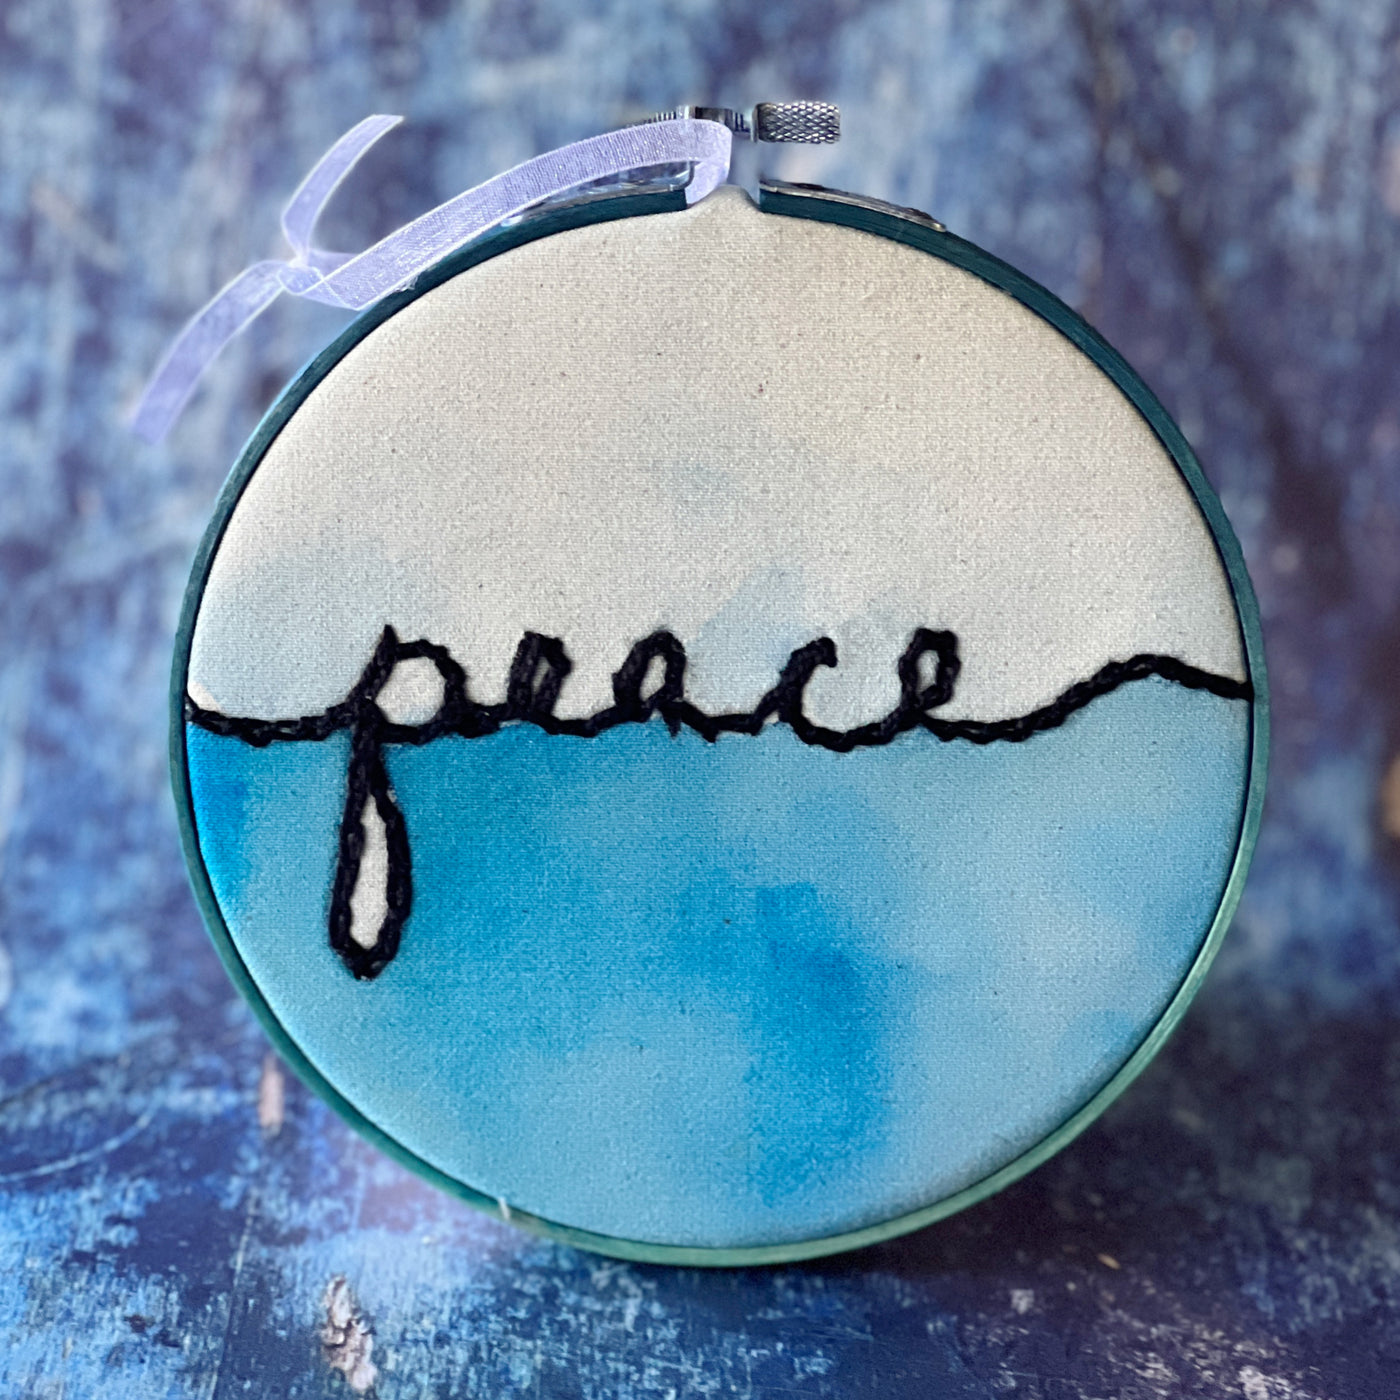 peace - single word hoop art